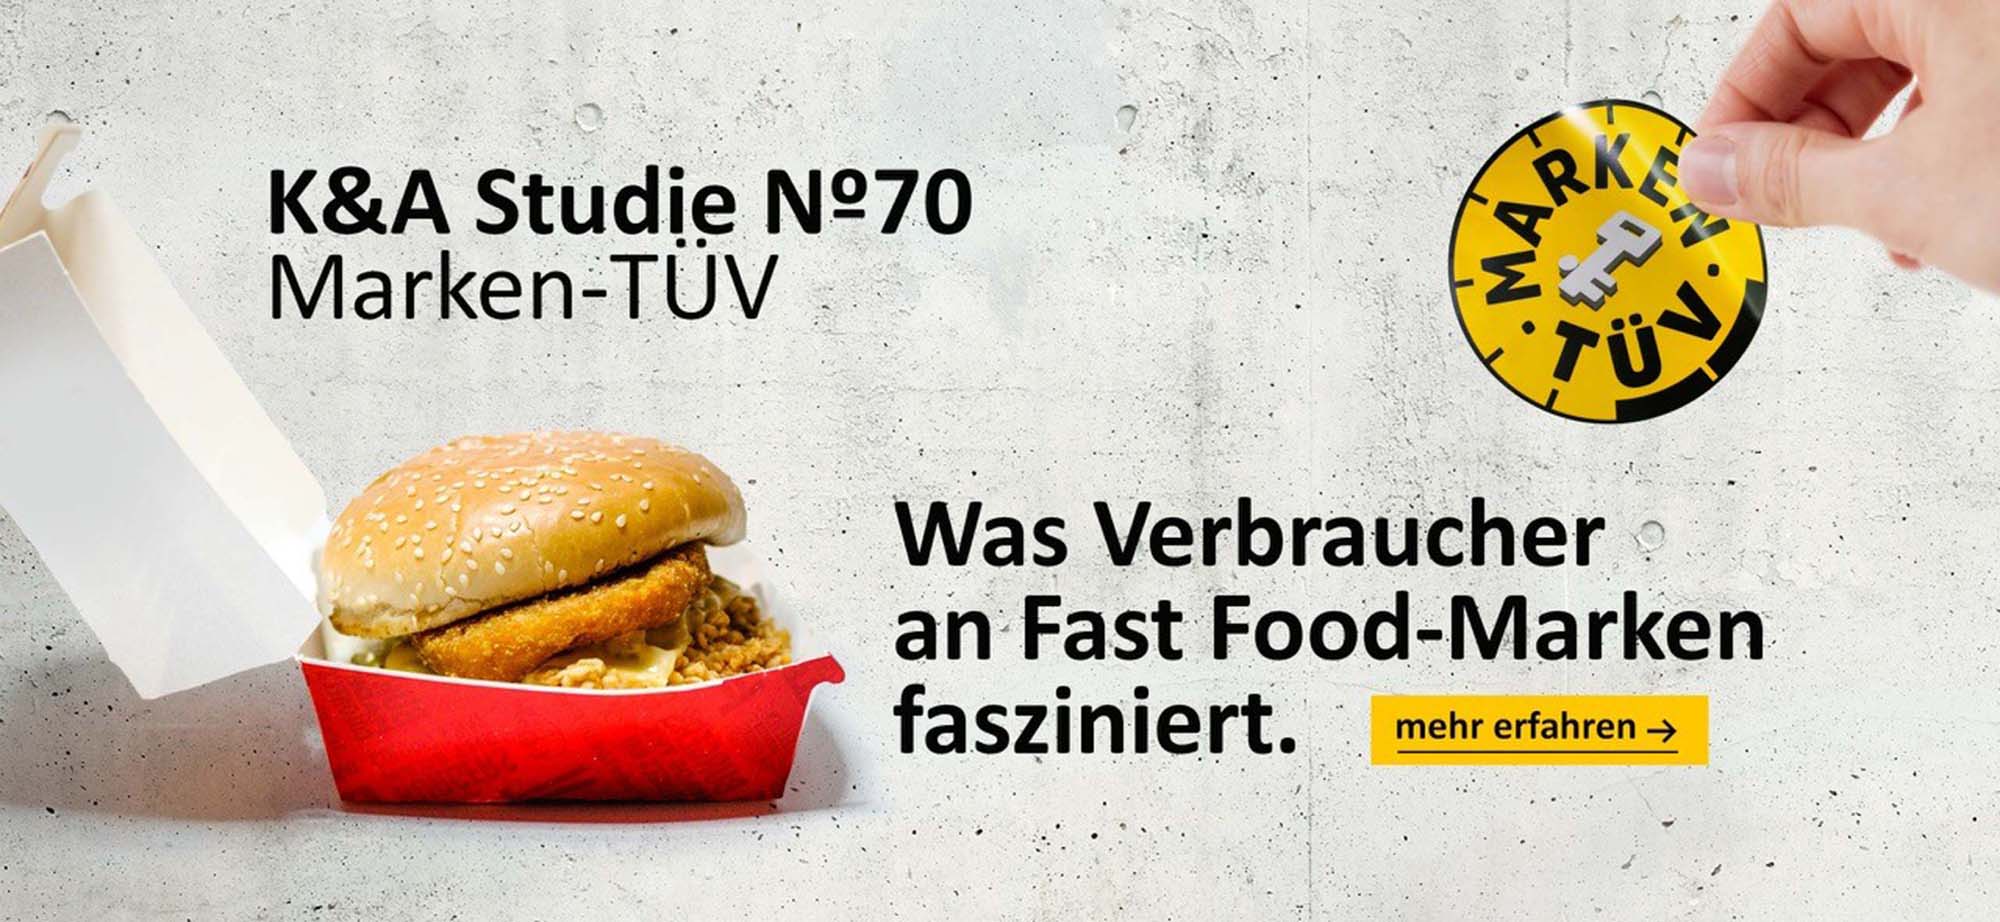 K&A Studie No 70 - Was Verbraucher an Fast Food-Marken fasziniert.